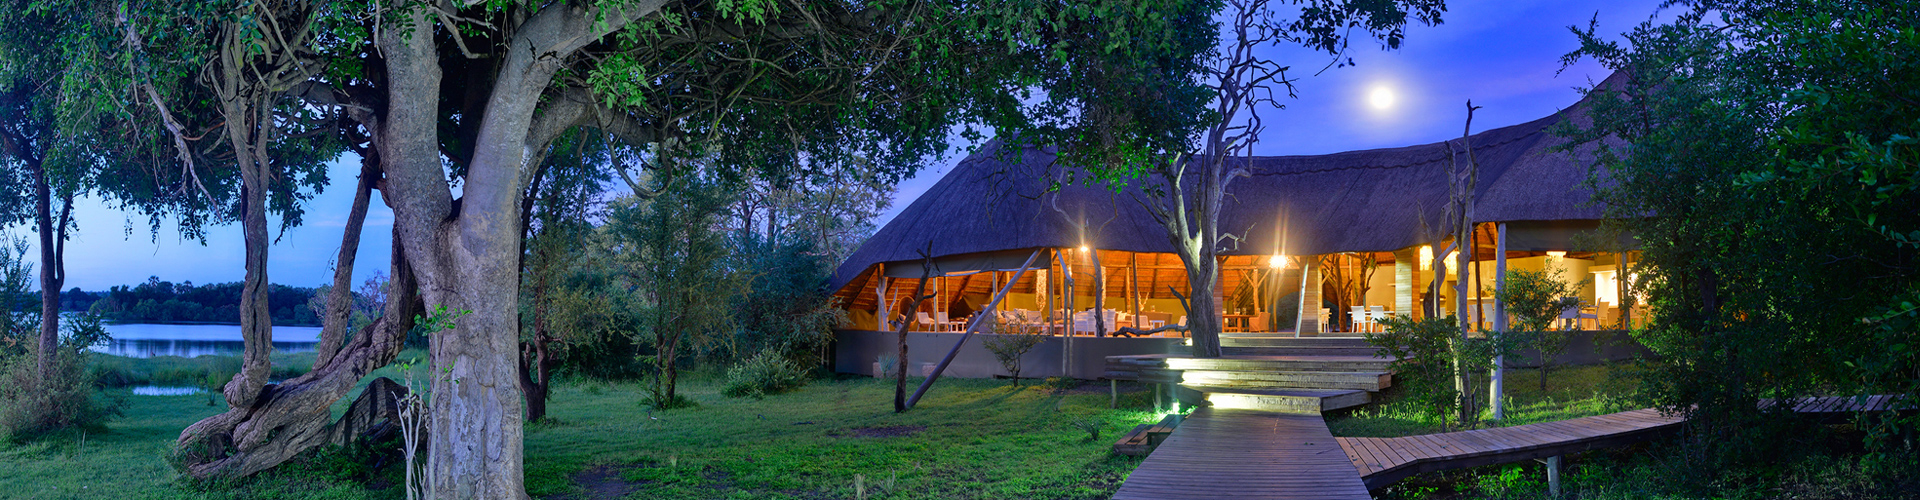 Victoria Falls River Lodge - Luxe Accommodatie Zambia